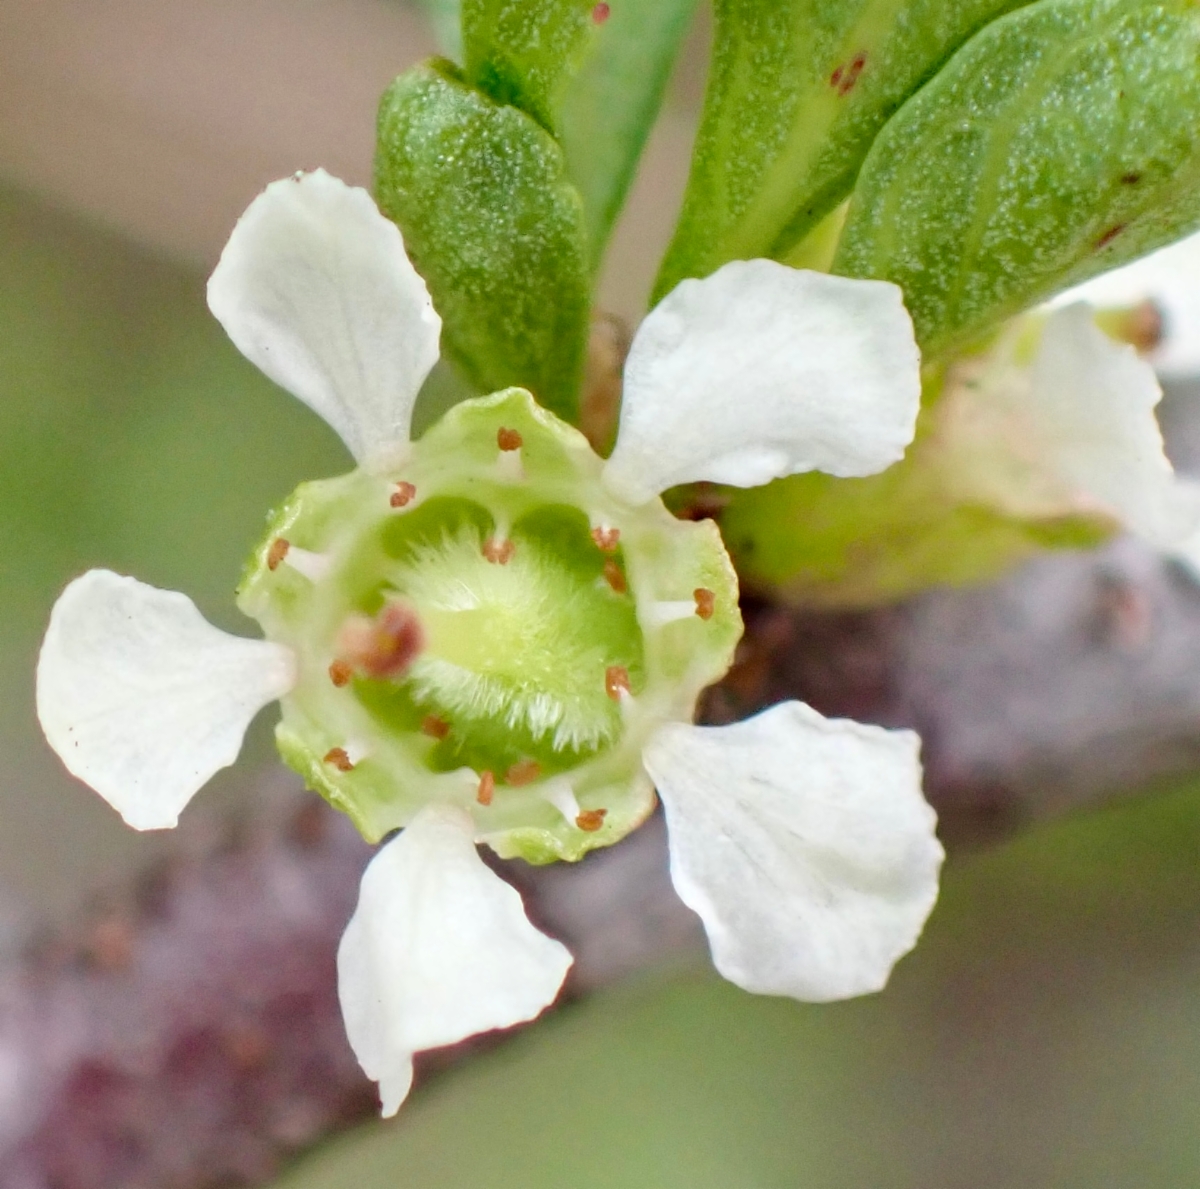 Prunus fasciculata var. punctata